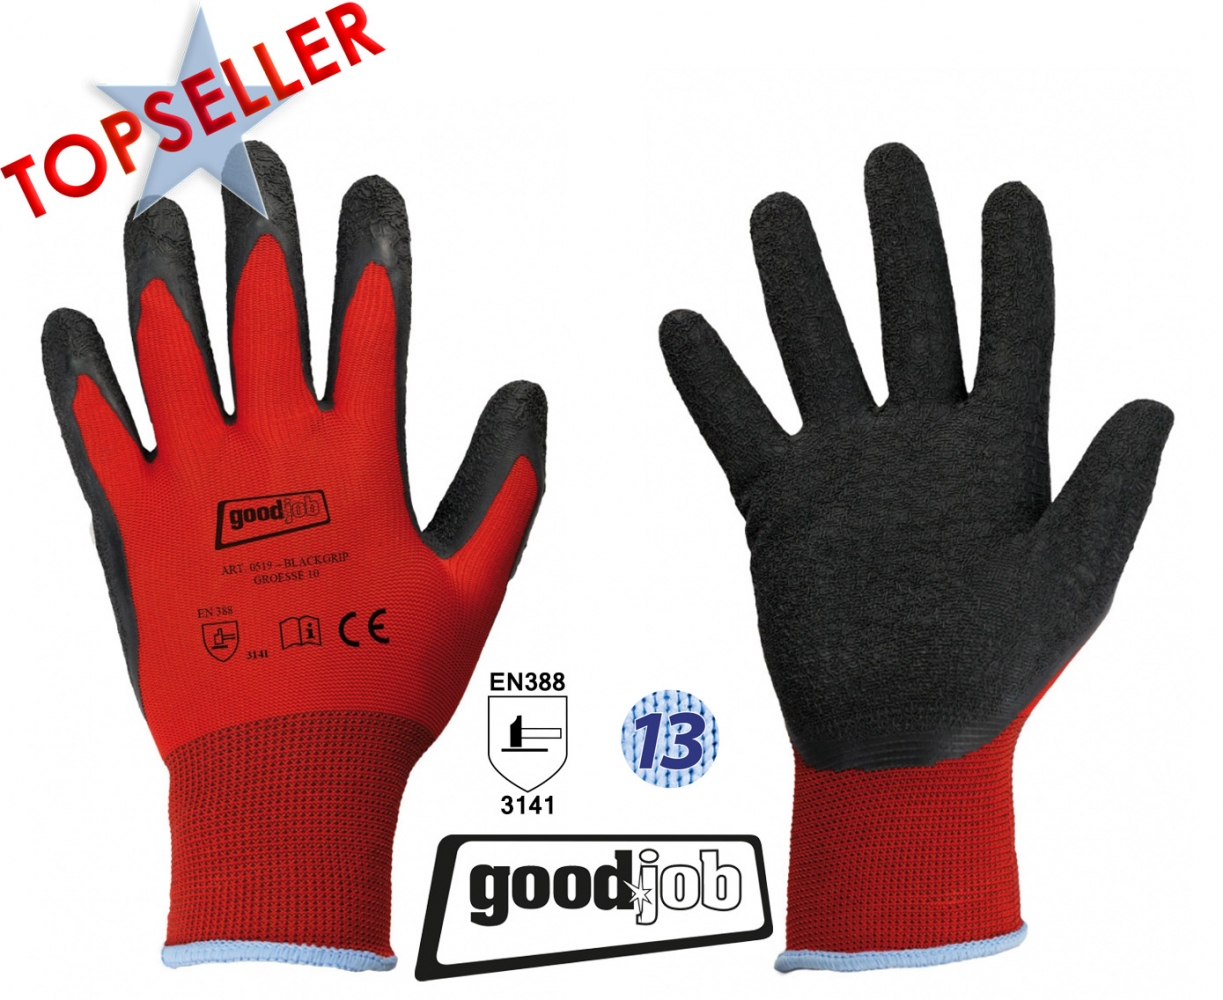 pics/Feldtmann 2016/E.I.S. Topseller/good-job-0519-black-grip-knit-safety-gloves-with-latex-coating-topseller.jpg